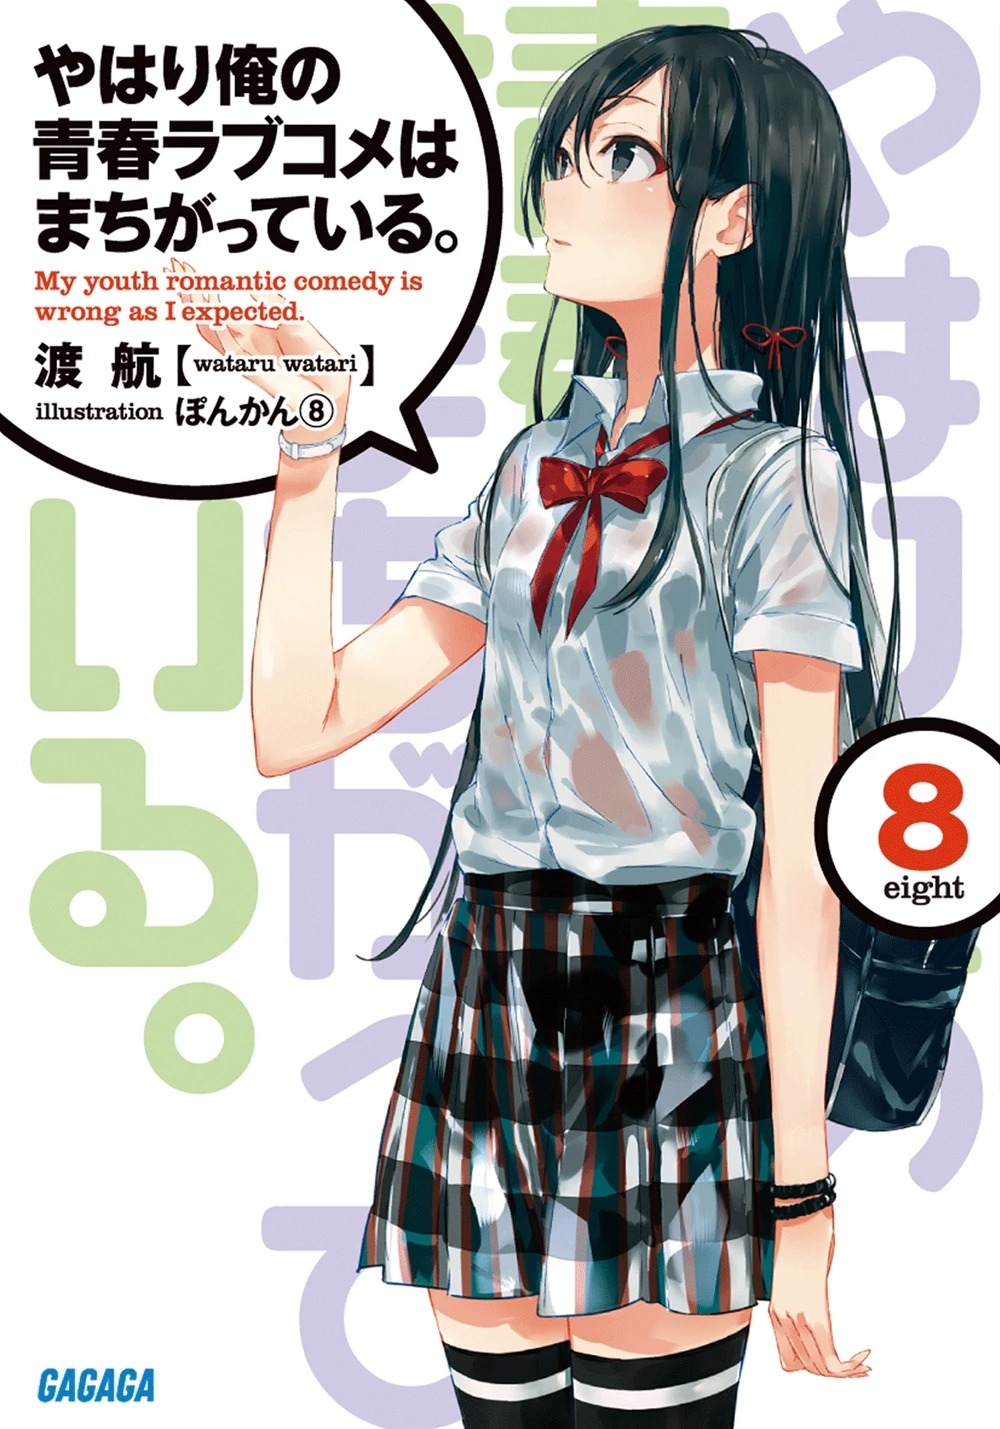 [light novel] yahari ore no seishun love come wa machigatteiru illust compliation 104